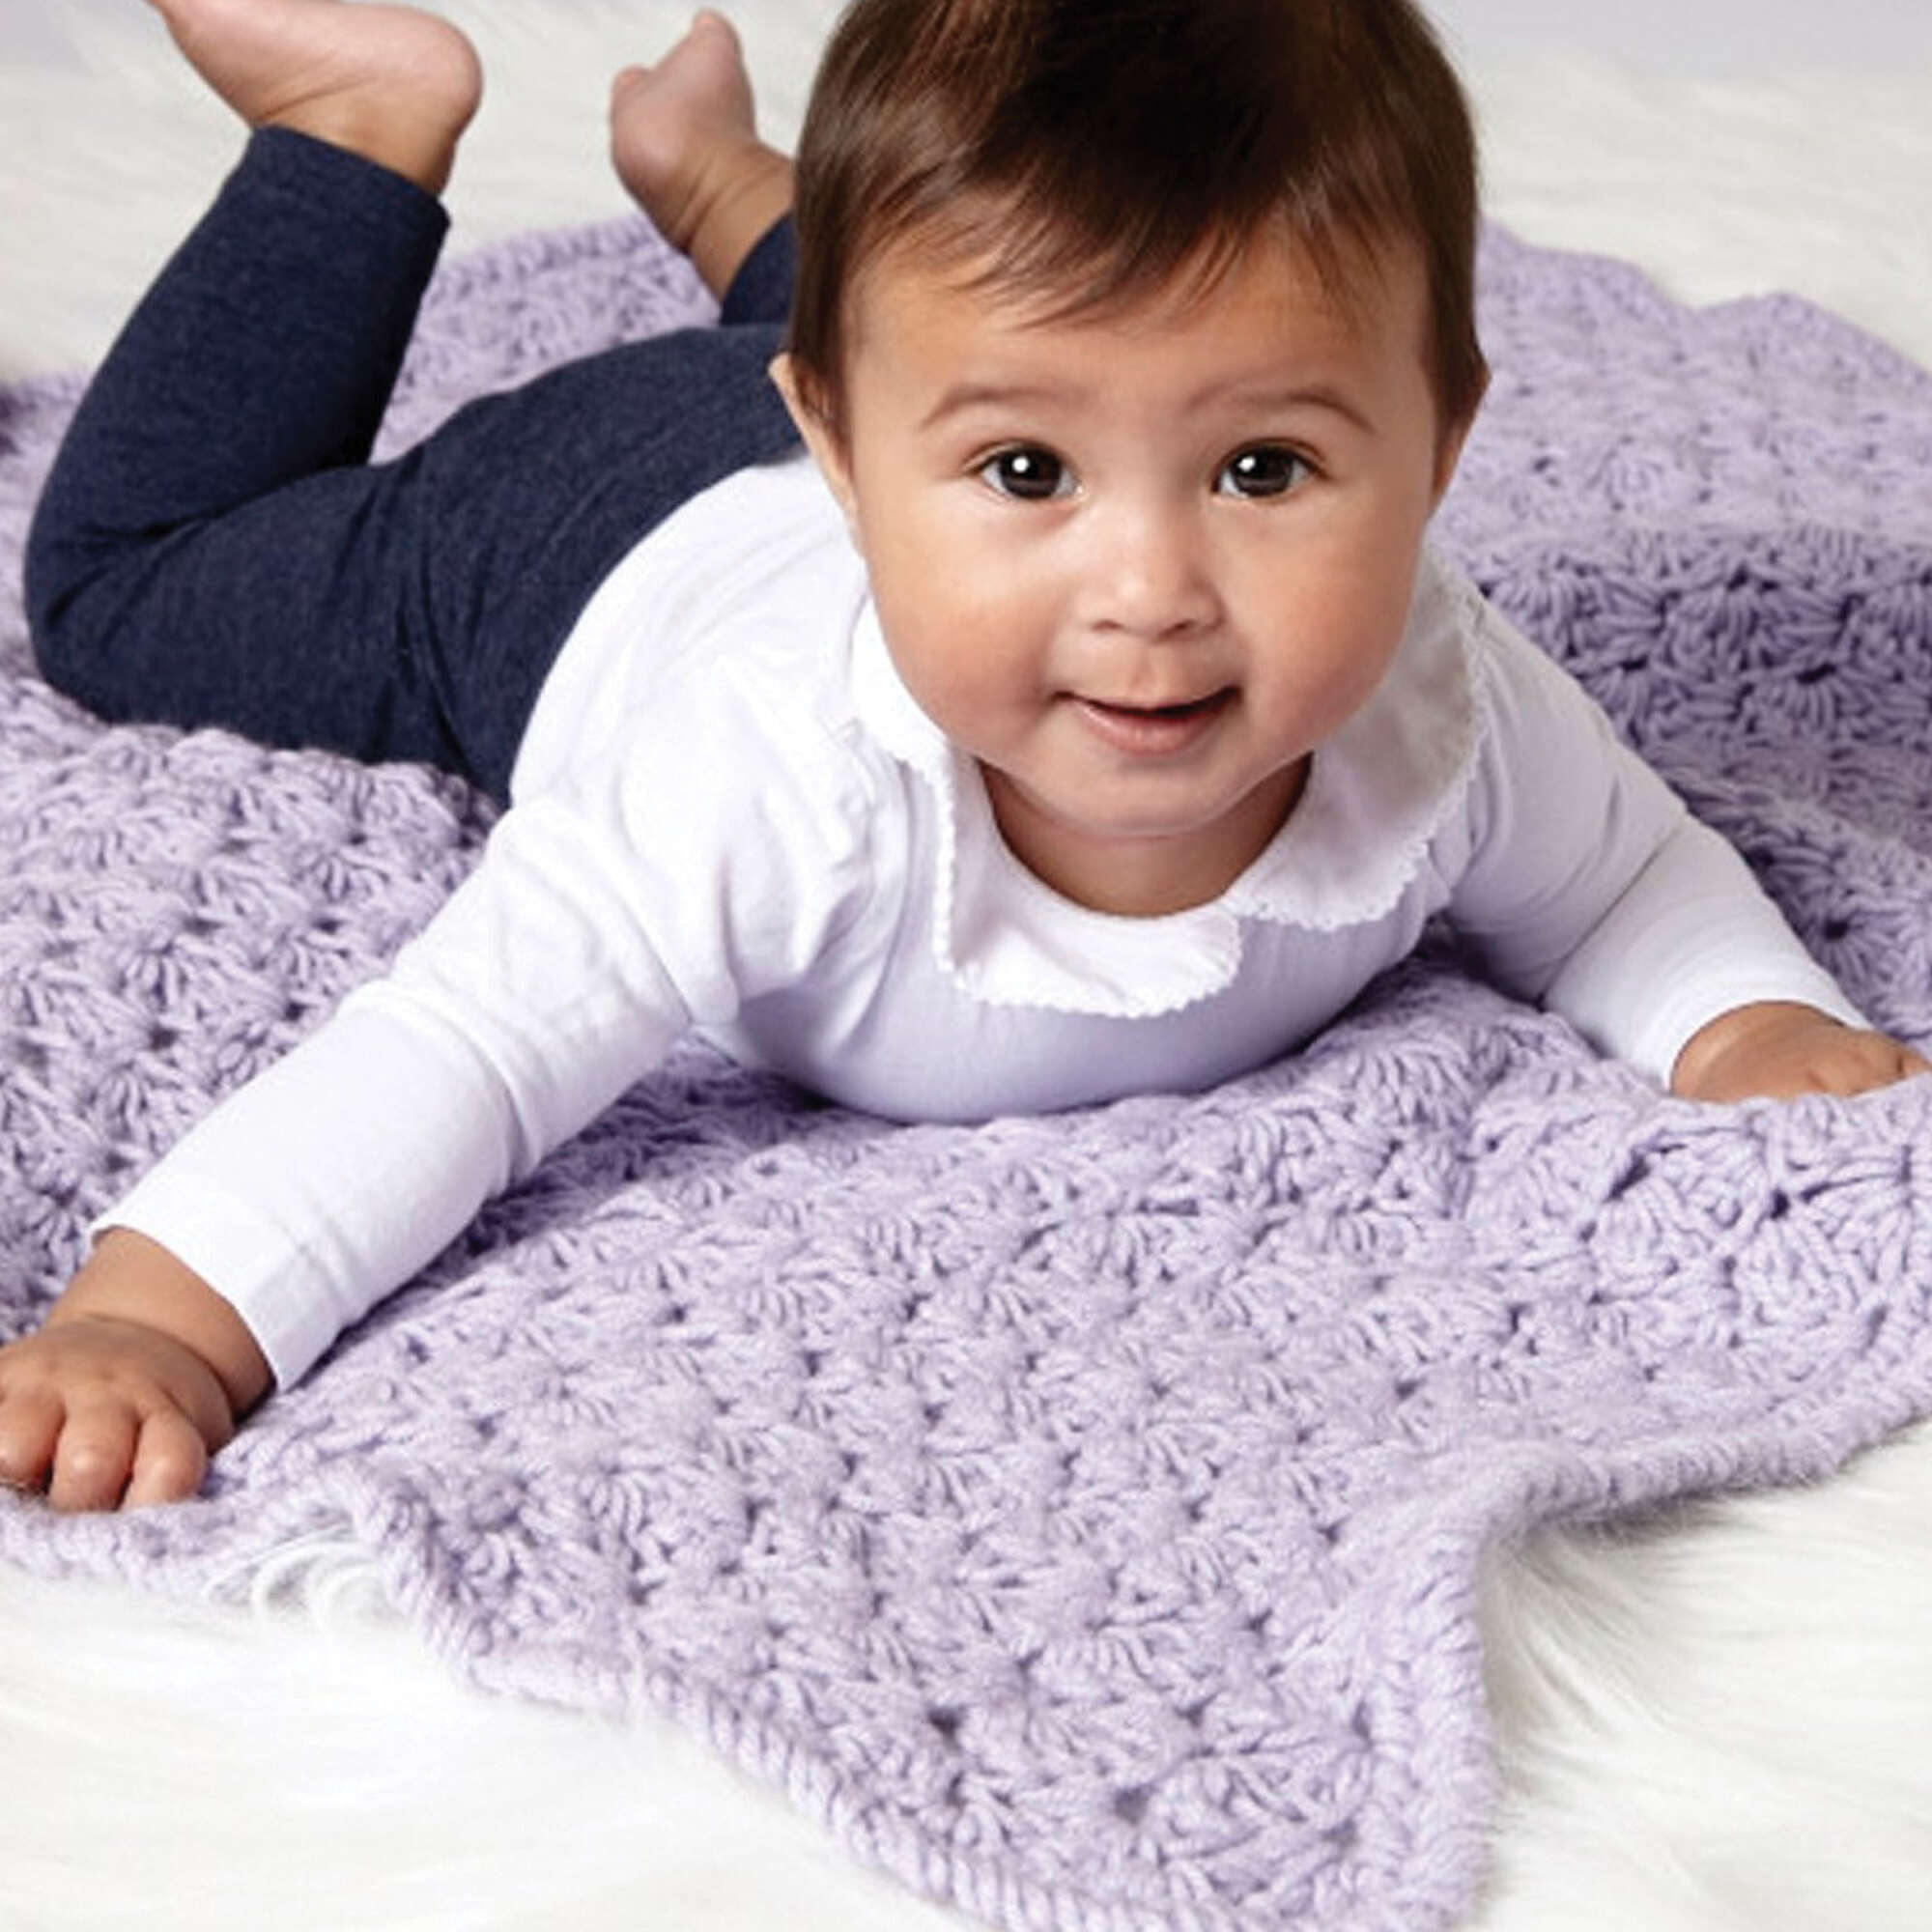 Herrschners Lollipops Baby Blanket Crochet Kit